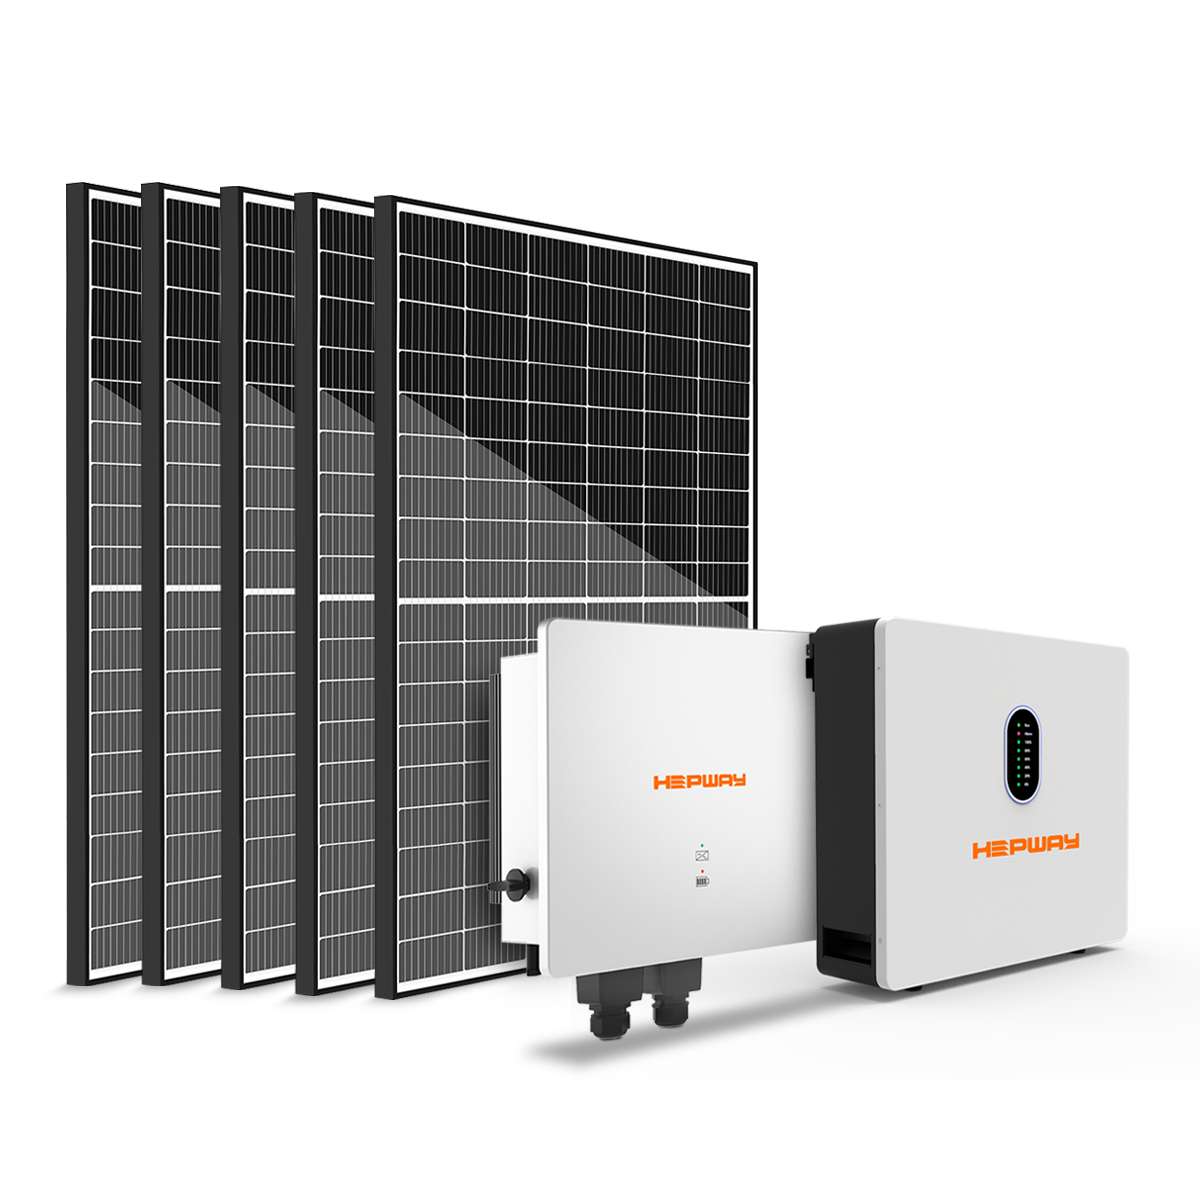 HEPWAY Home Energy Storage Speichersystem = 5000 W Hybrid-Wechselrichter + 5120 Wh Speicherbatterie + 2000 W Solarpanel